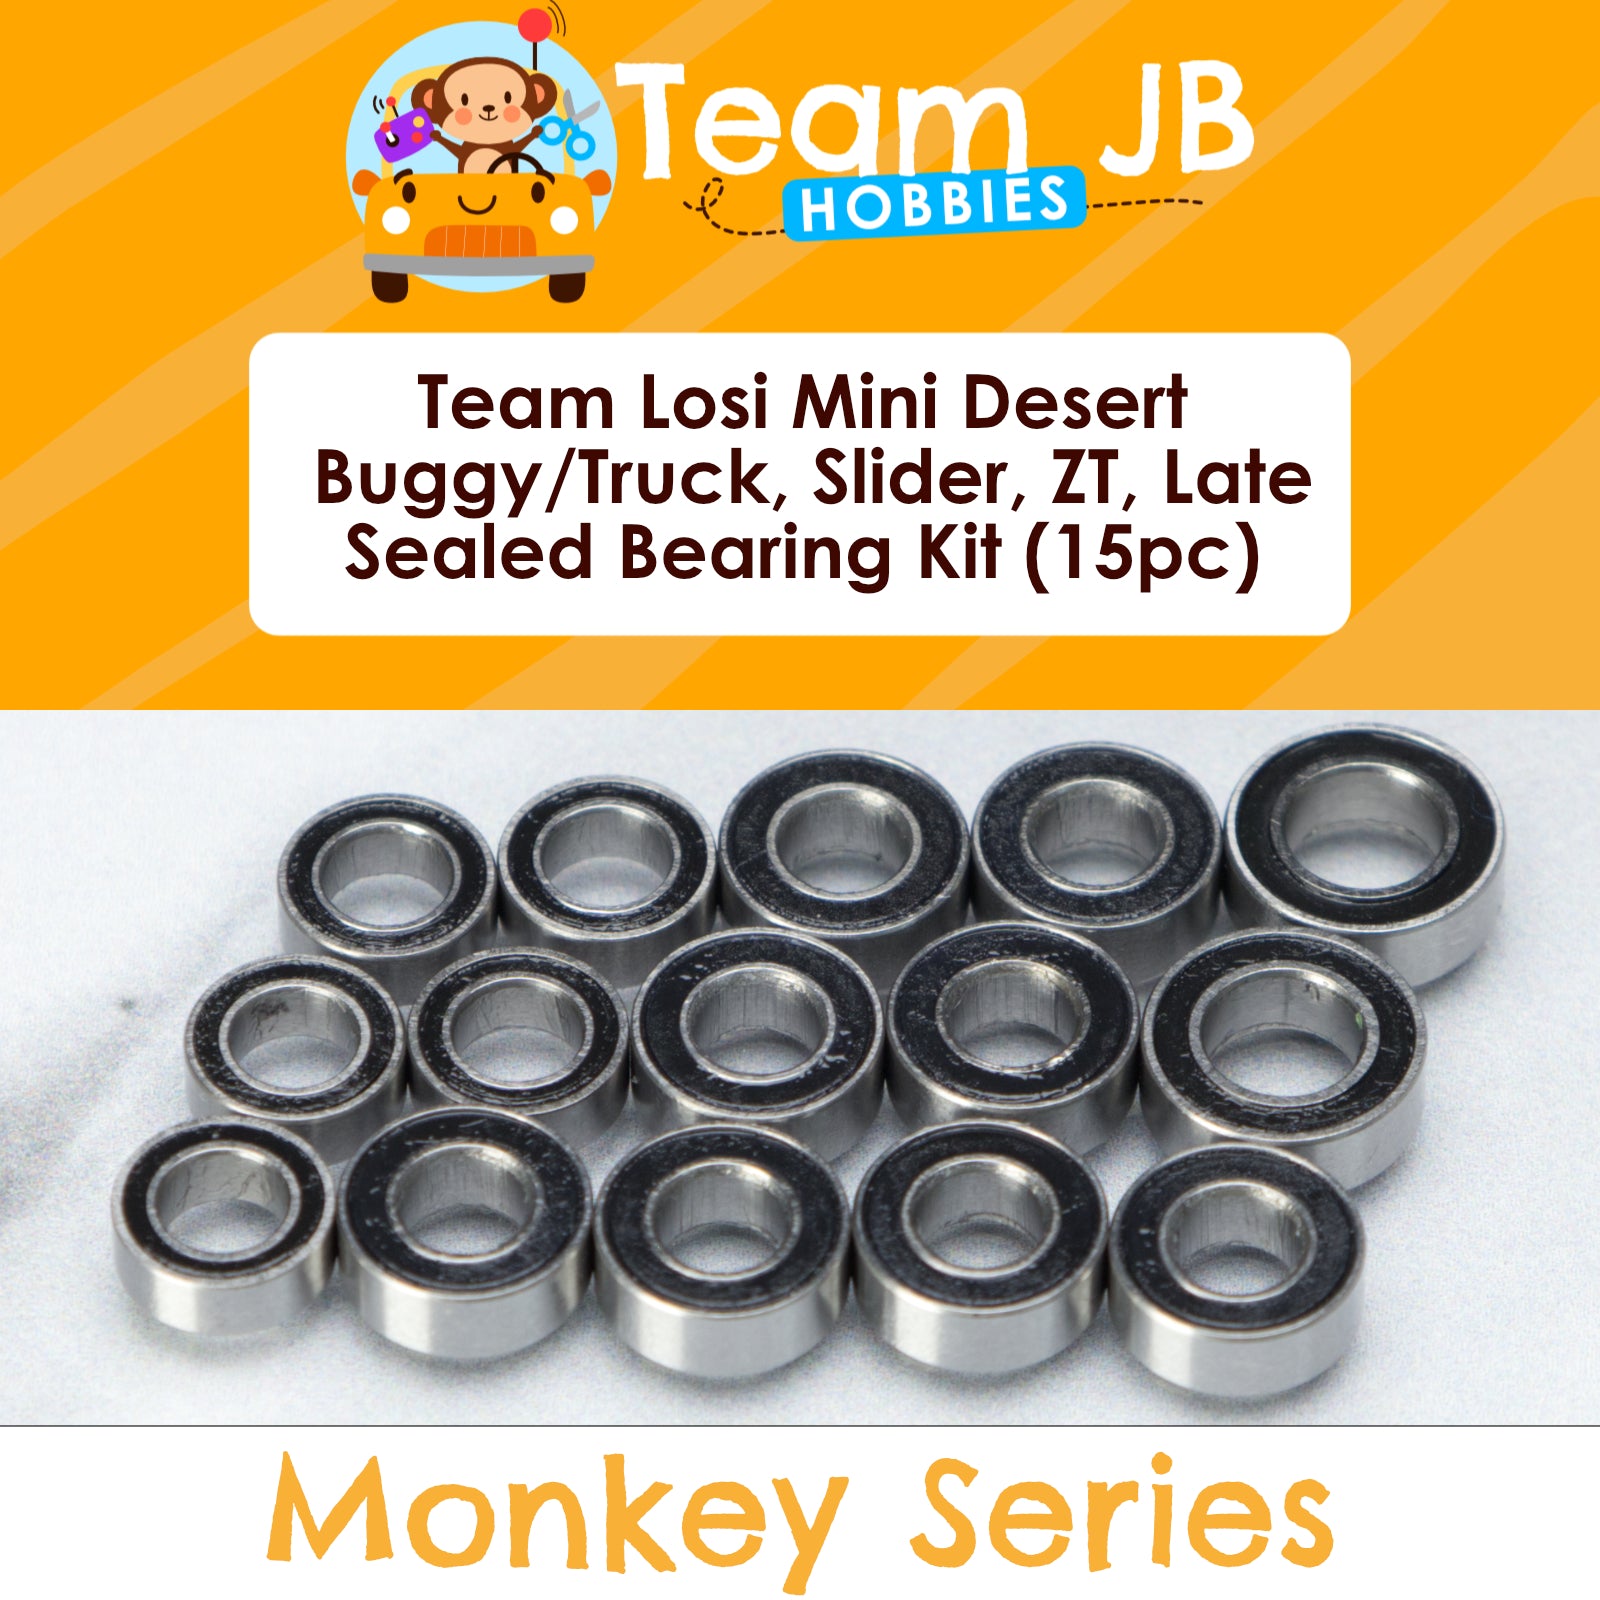 Team Losi Mini Desert Buggy/Truck, Slider, ZT, Late Model - Sealed Bearing Kit